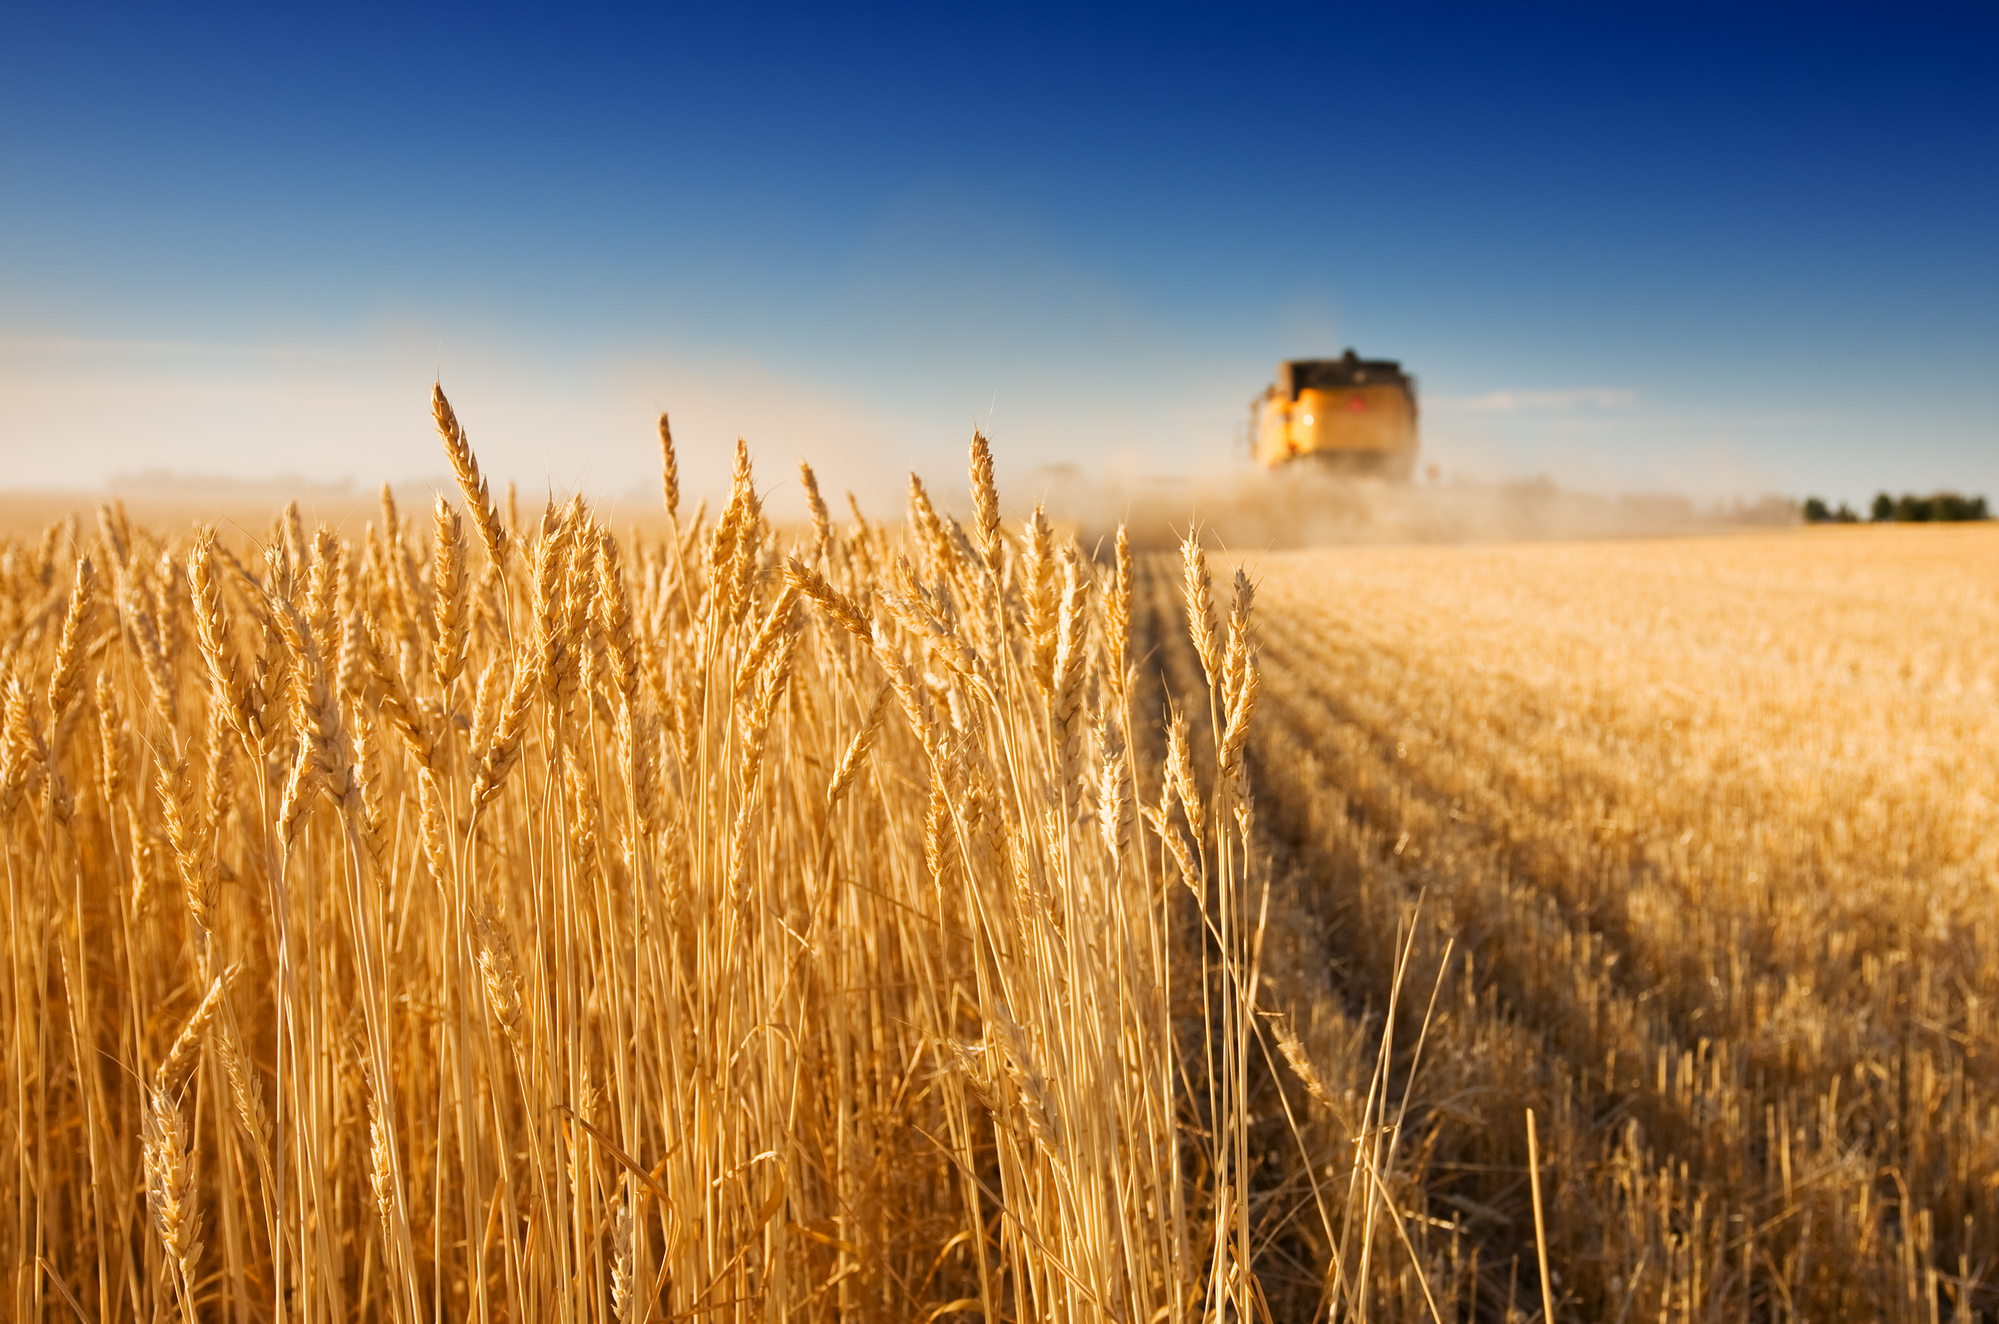 Ucraina şi Rusia semnează cu Turcia şi ONU acorduri separate privind exportul de cereale ucrainene